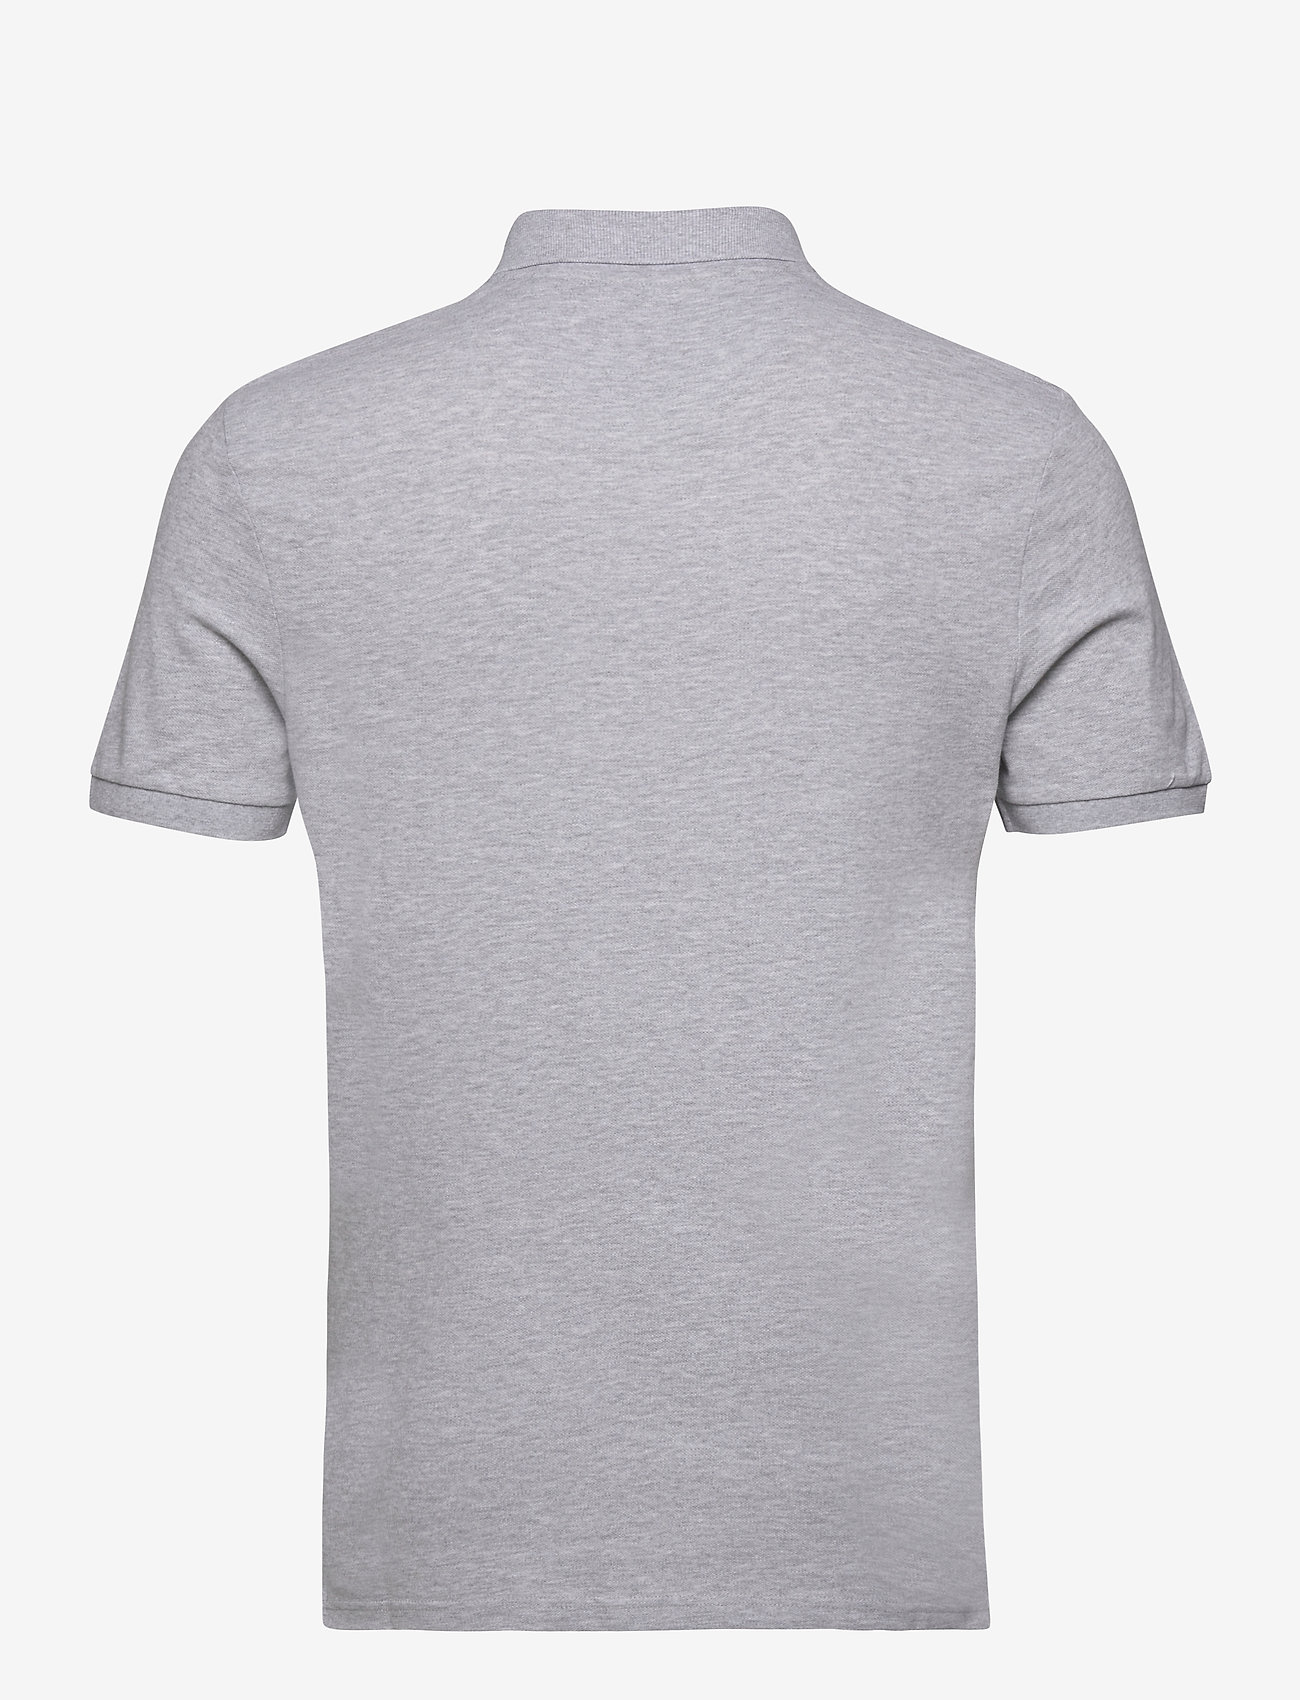 Lyle & Scott - Plain Polo Shirt - krótki rękaw - light grey marl - 1